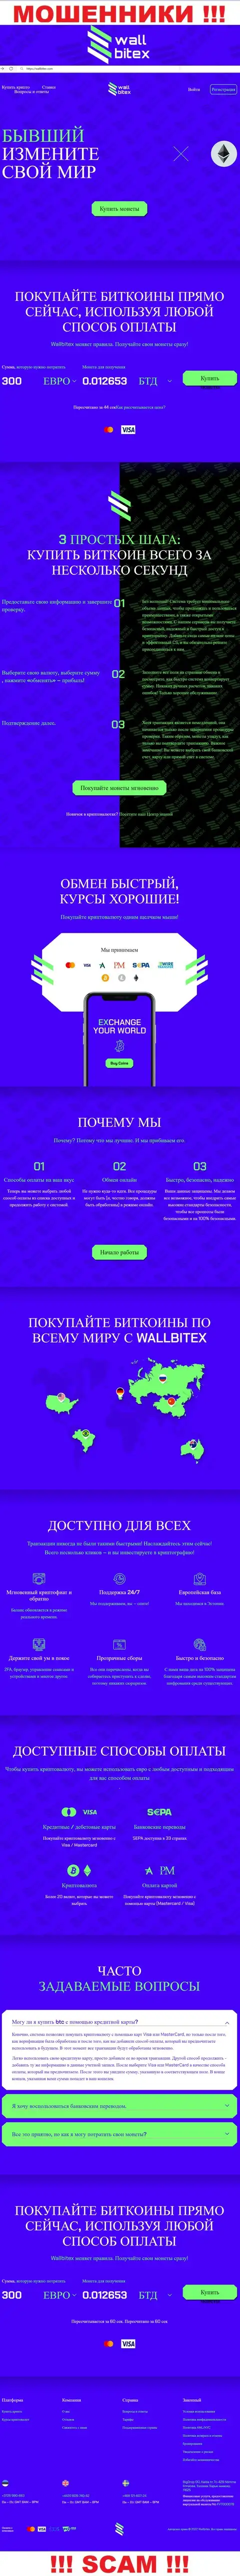 WallBitex Com - это официальный web-сервис мошеннической компании ВаллБитекс Ком